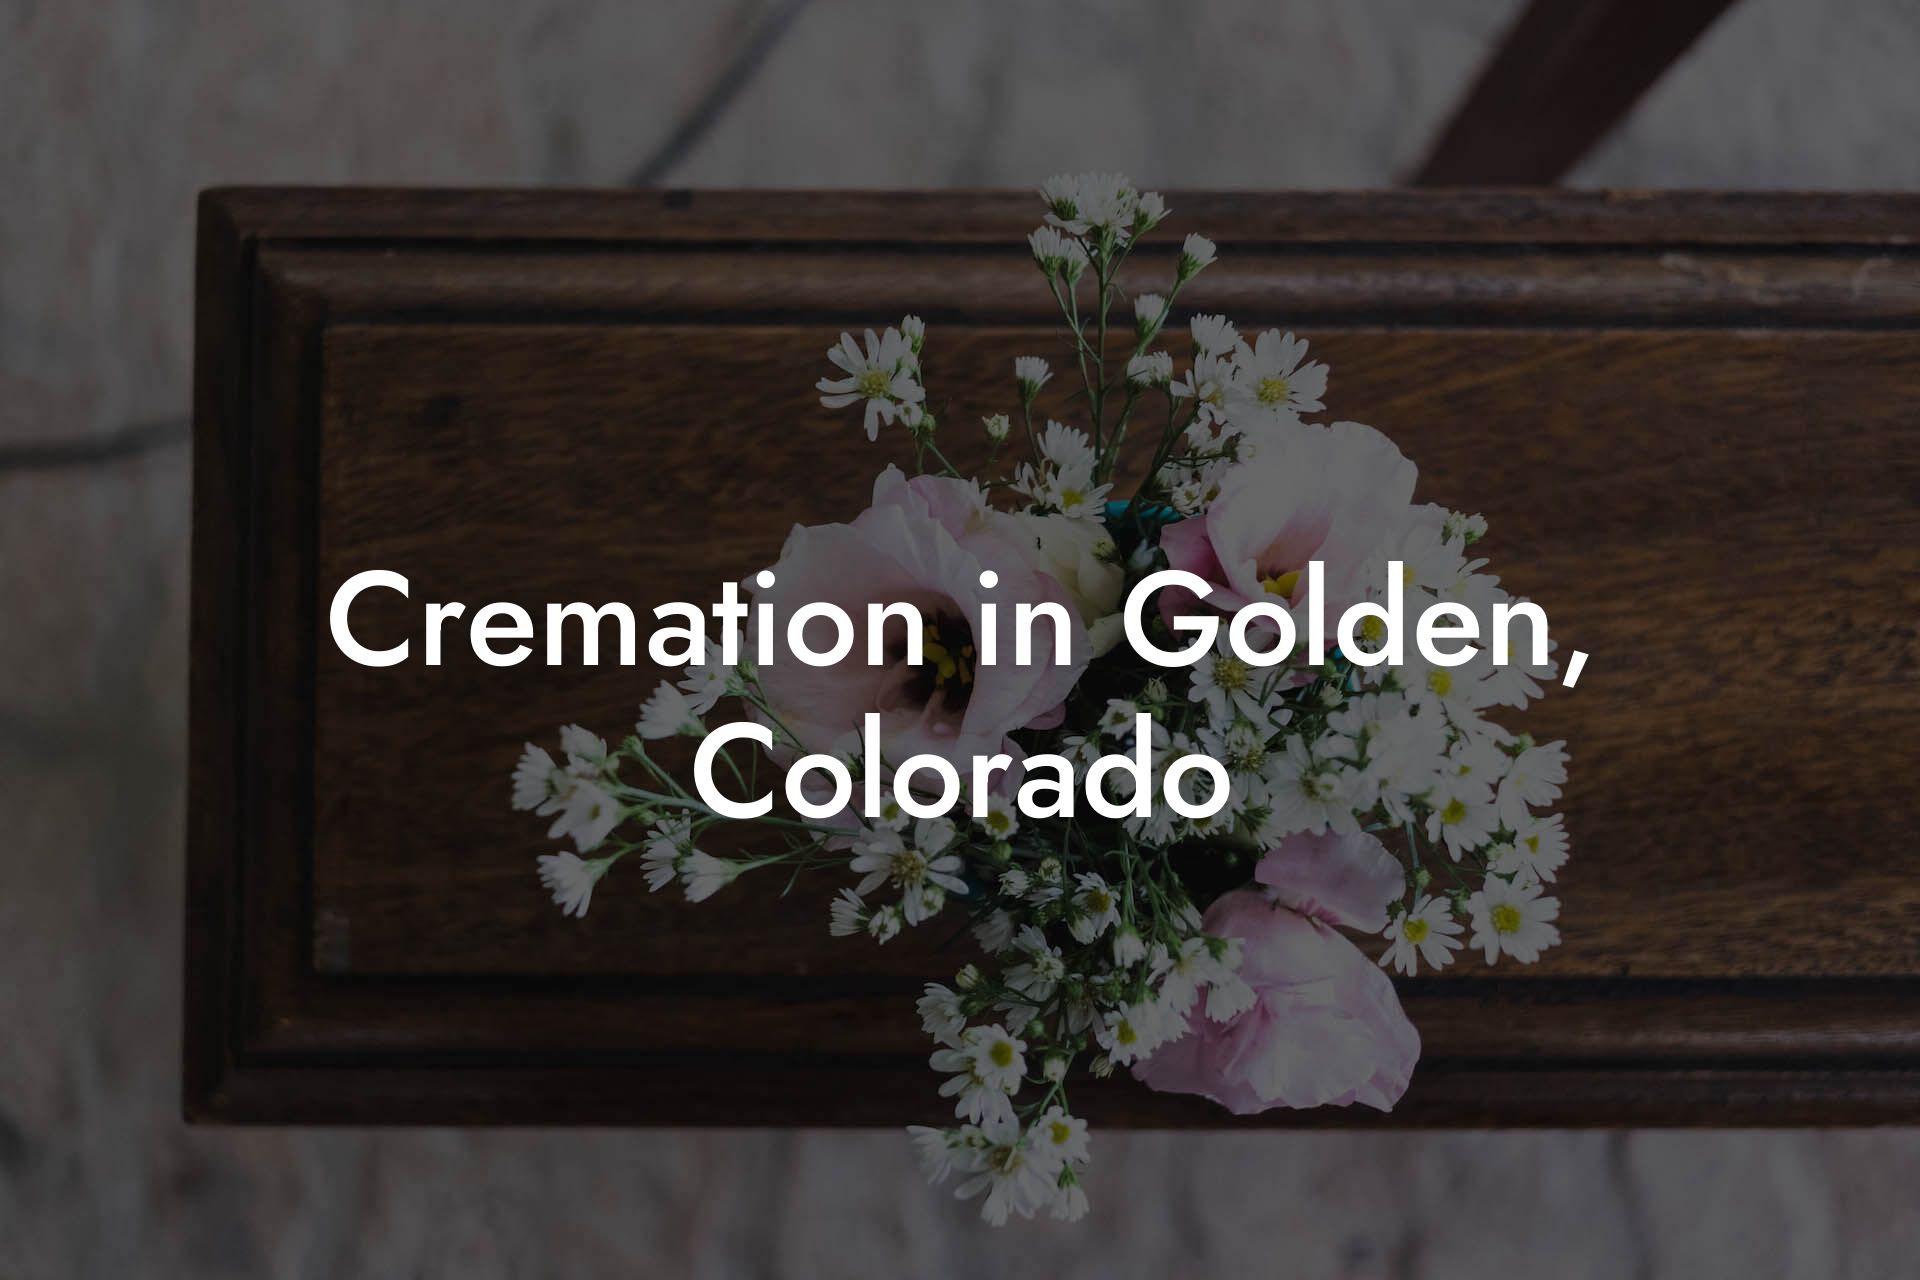 Cremation in Golden, Colorado